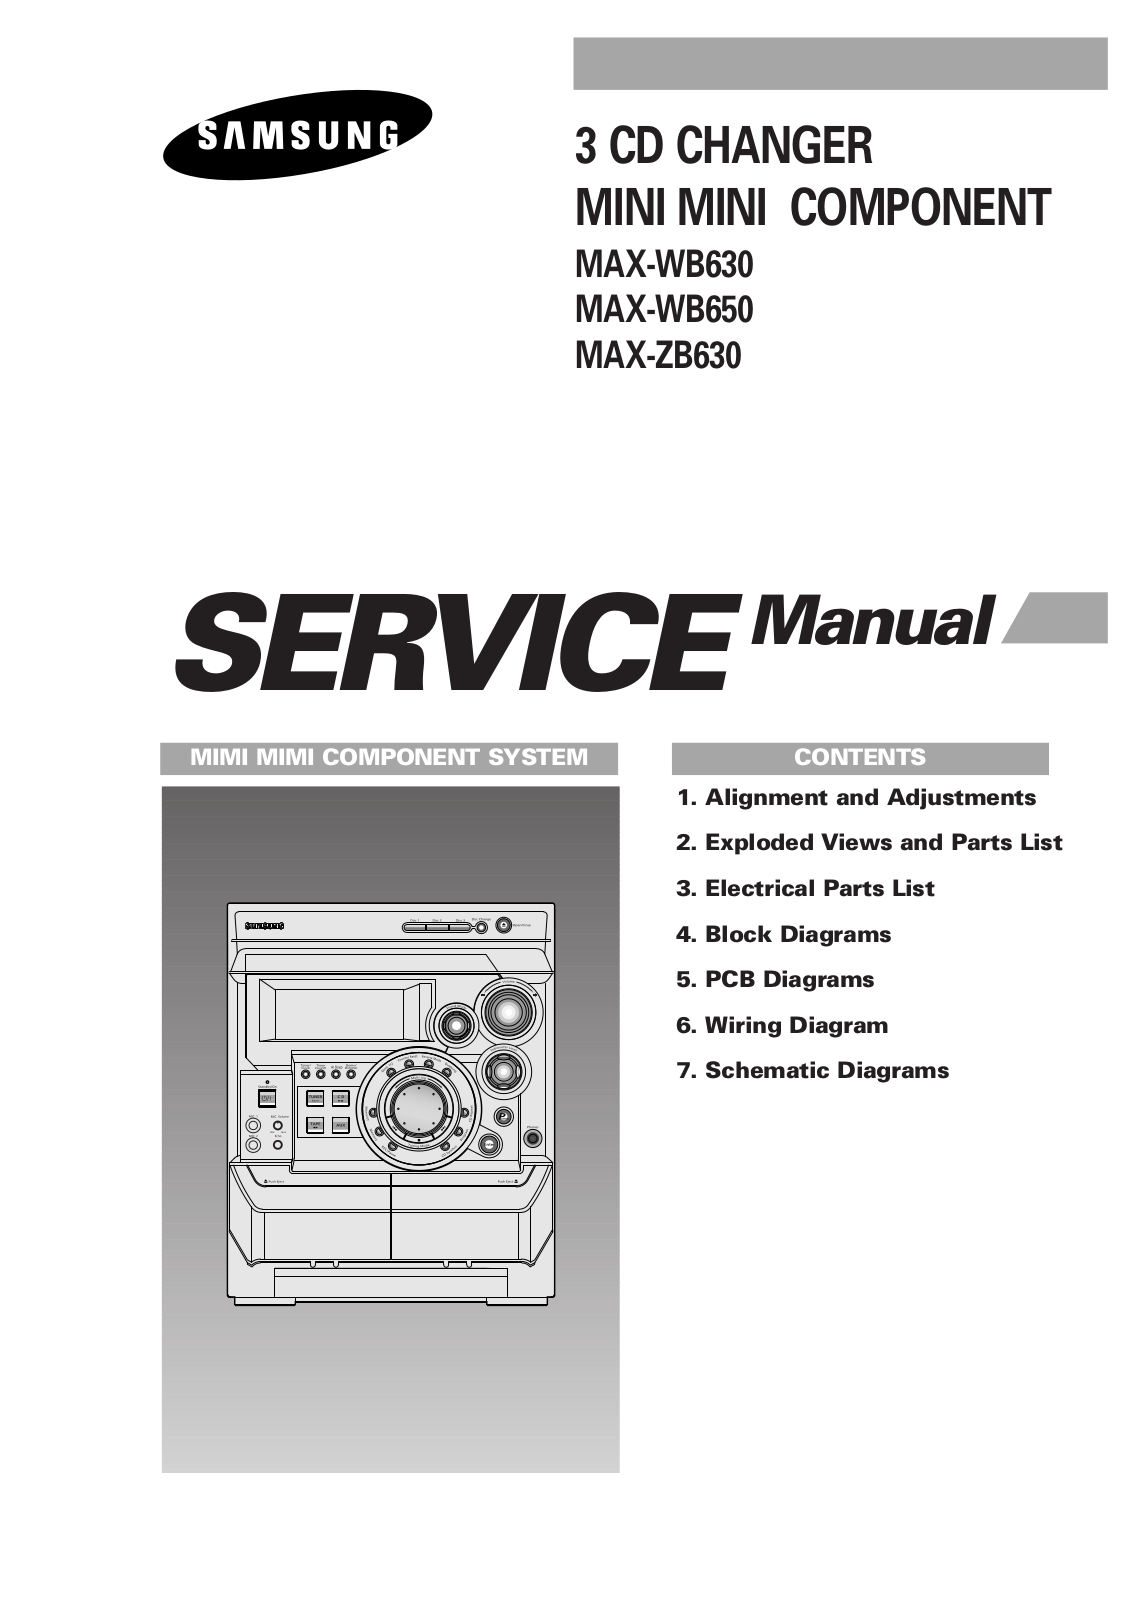 Samsung MAX-WB630, MAX-WB650, MAX-ZB630 Service Manual